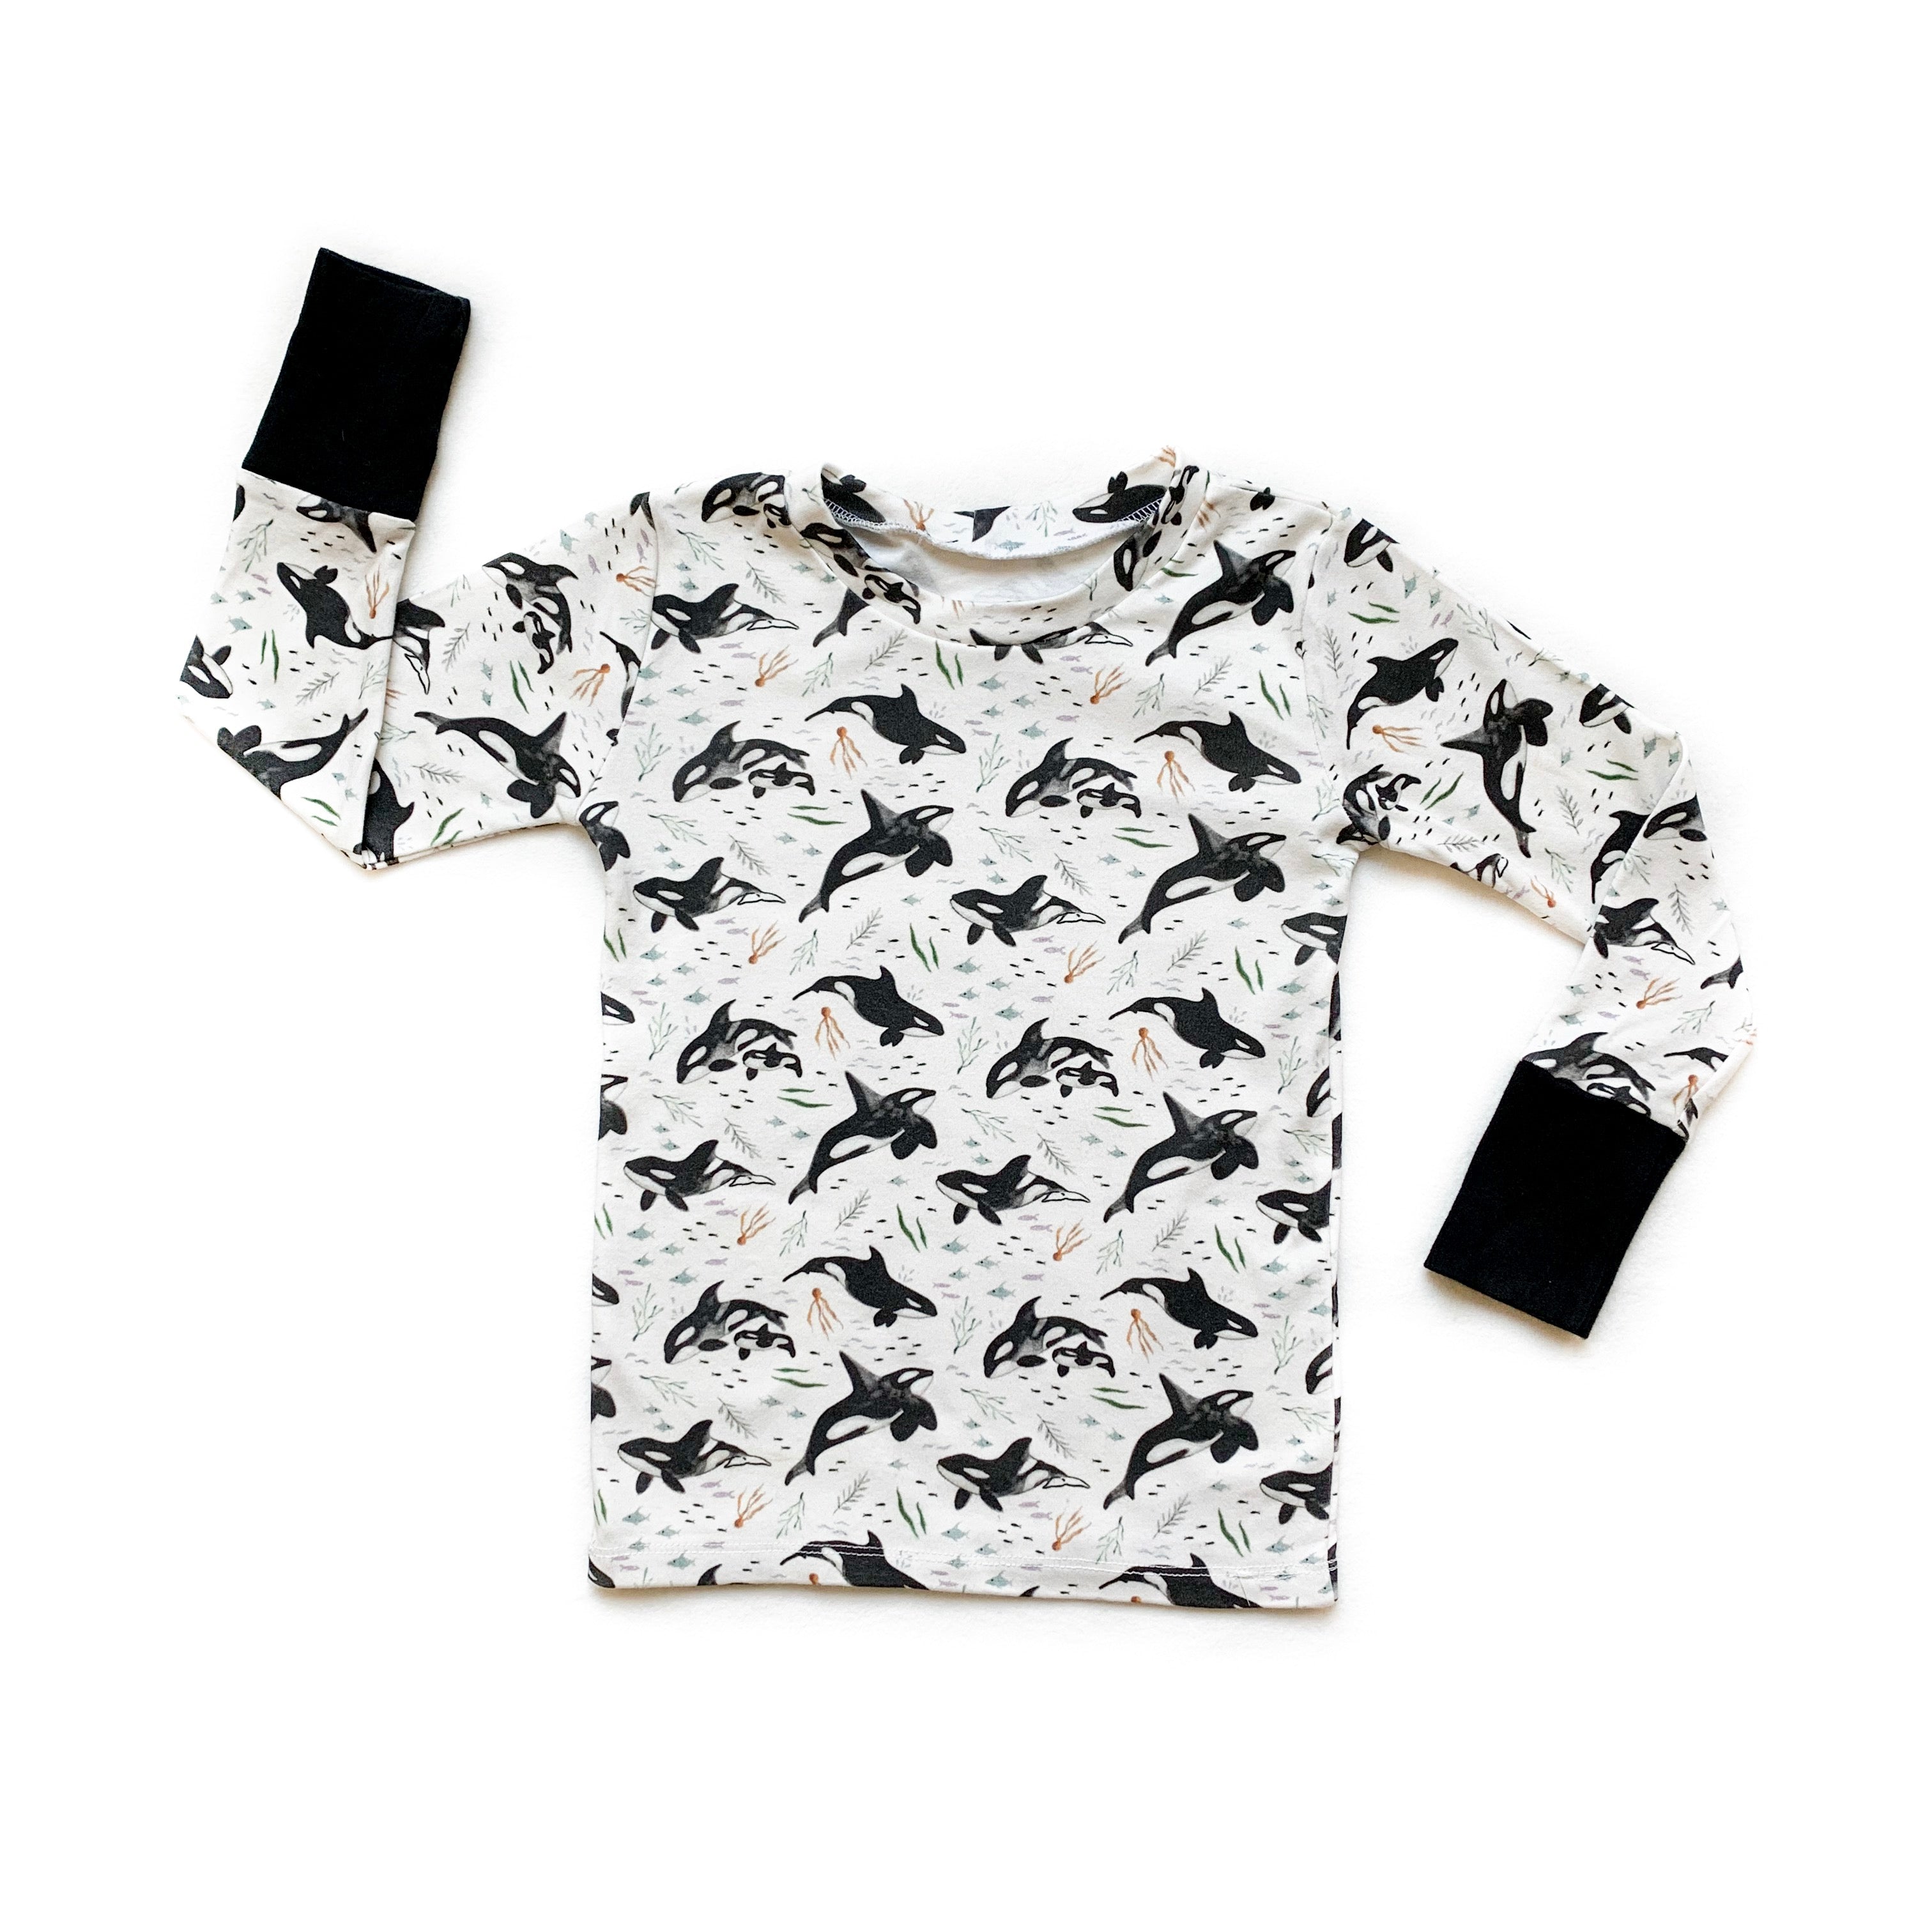 Kids Orca Whale Long Sleeve Shirt